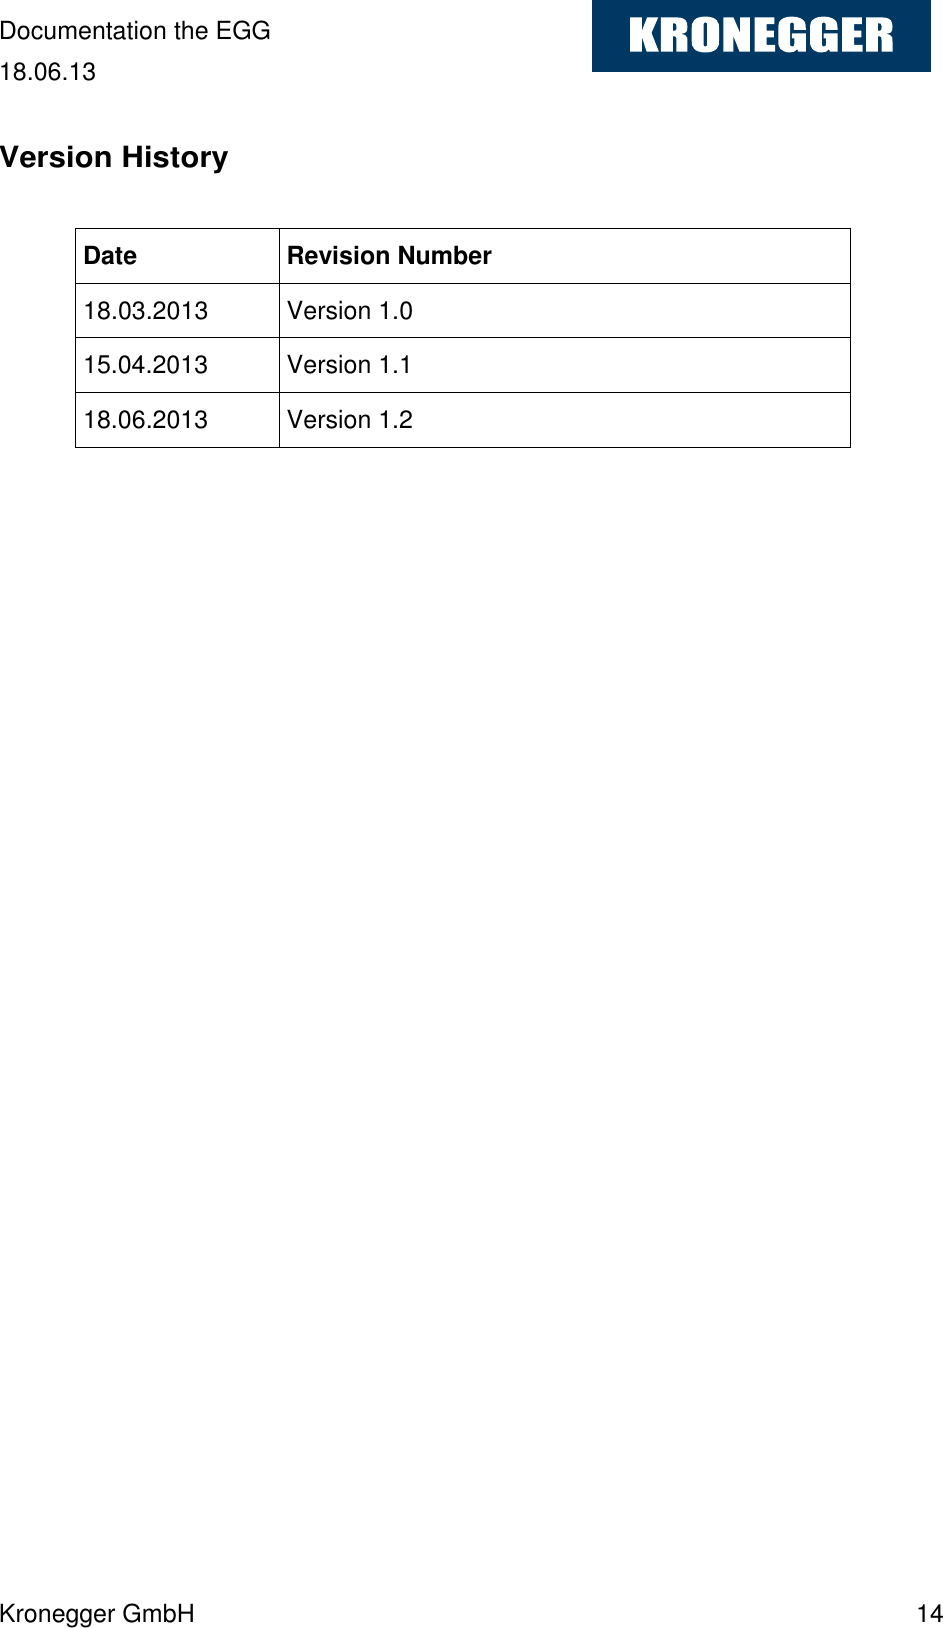 Documentation the EGG 18.06.13 Kronegger GmbH    14  Version History  Date Revision Number 18.03.2013 Version 1.0 15.04.2013 Version 1.1 18.06.2013 Version 1.2  